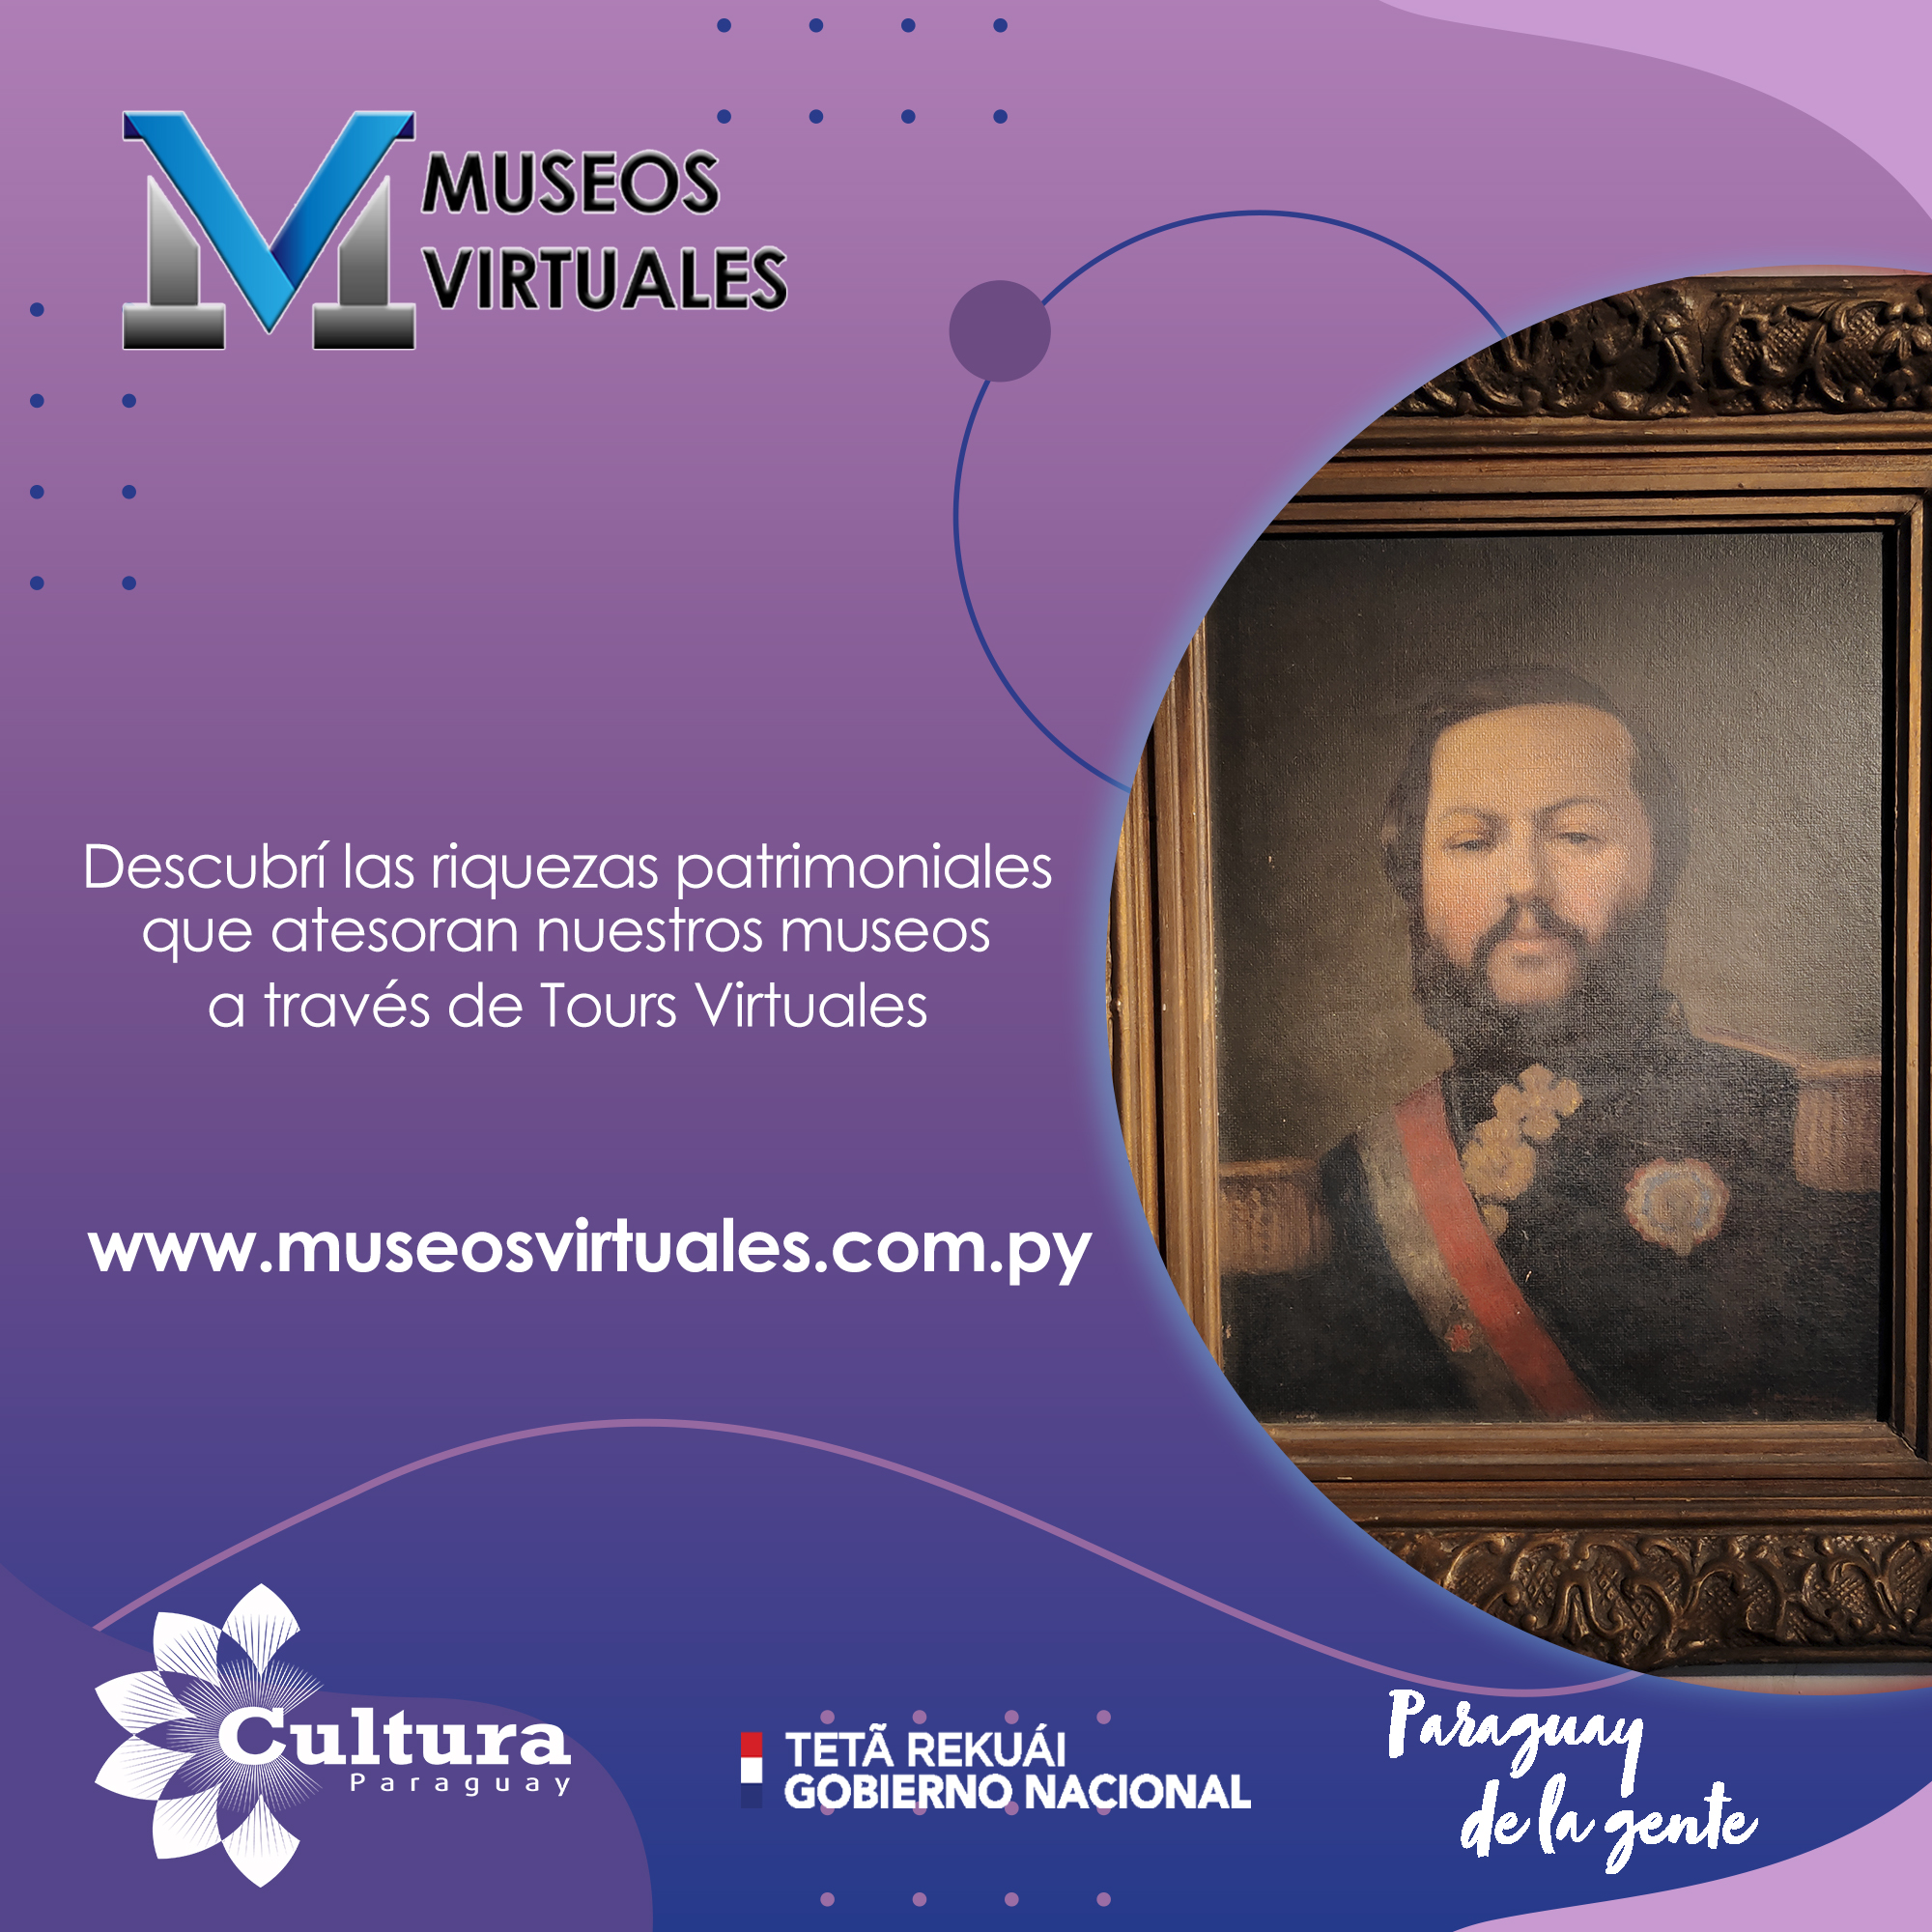 Fondos de Cultura 2020: Museos Virtuales abiertos las 24 horas del día, los 7 días de la semana imagen